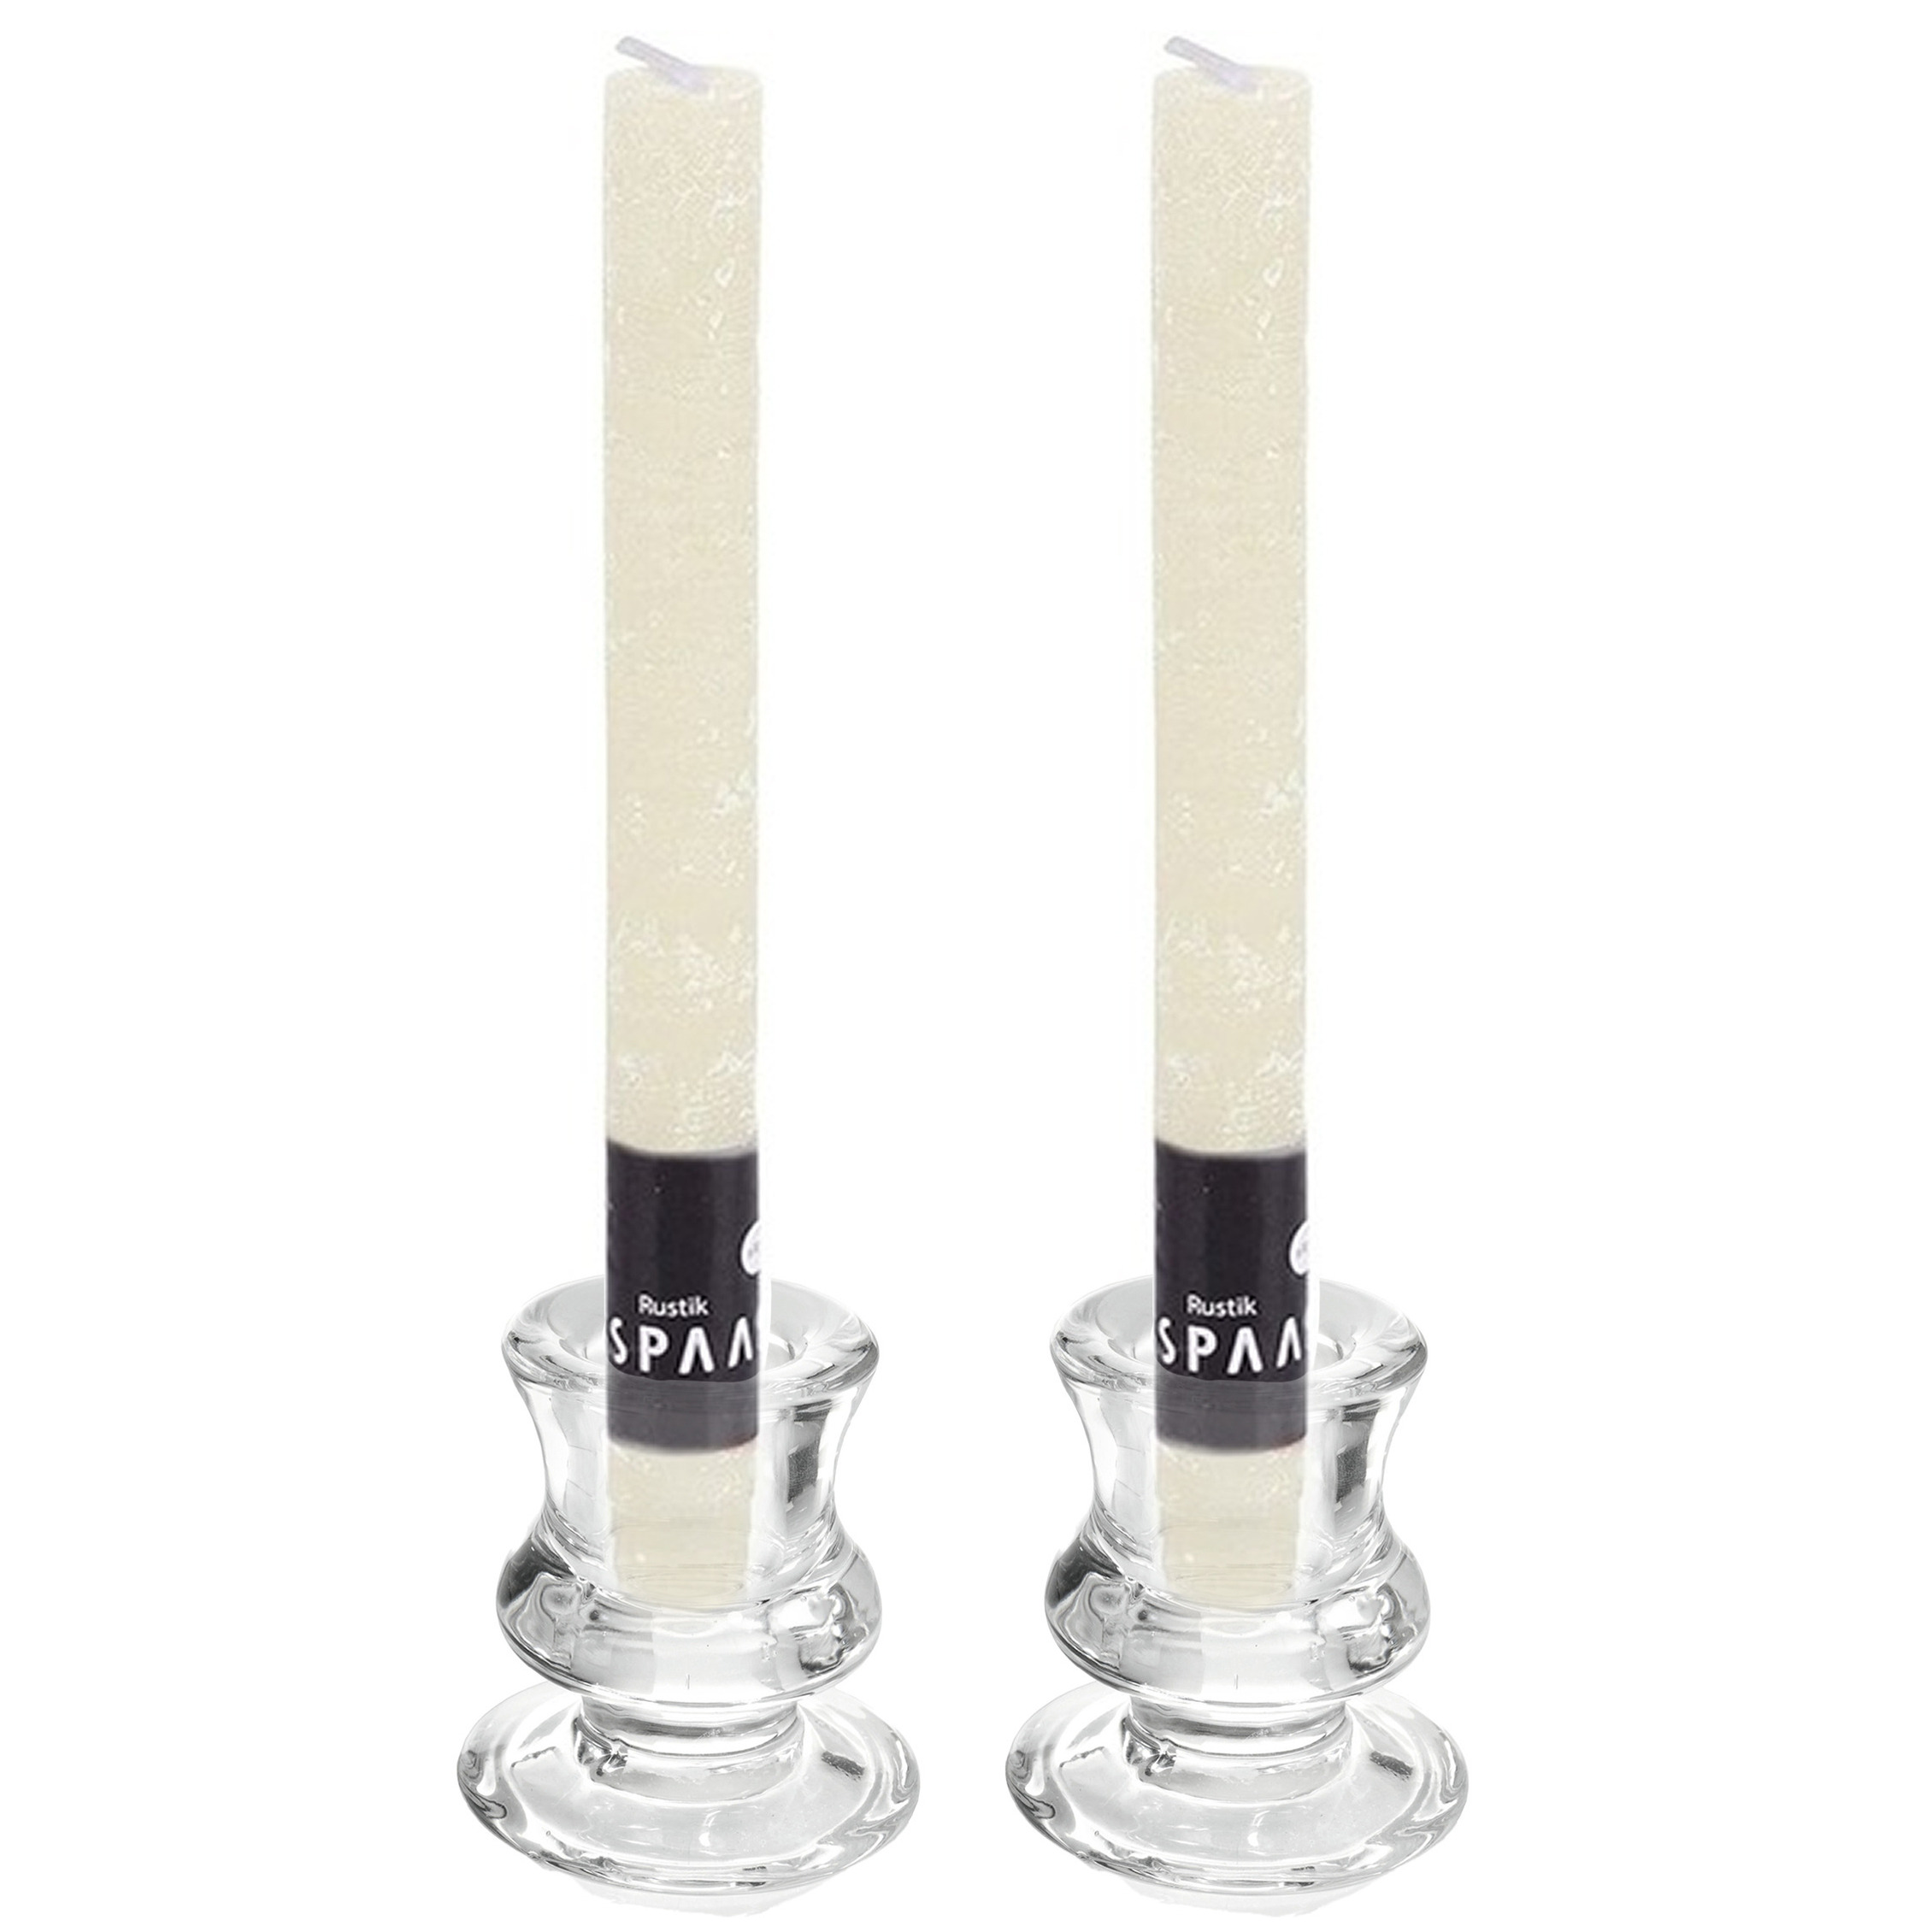 Kaarsen set - 2x kandelaars - glas - 12x dinerkaarsen - ivoor wit